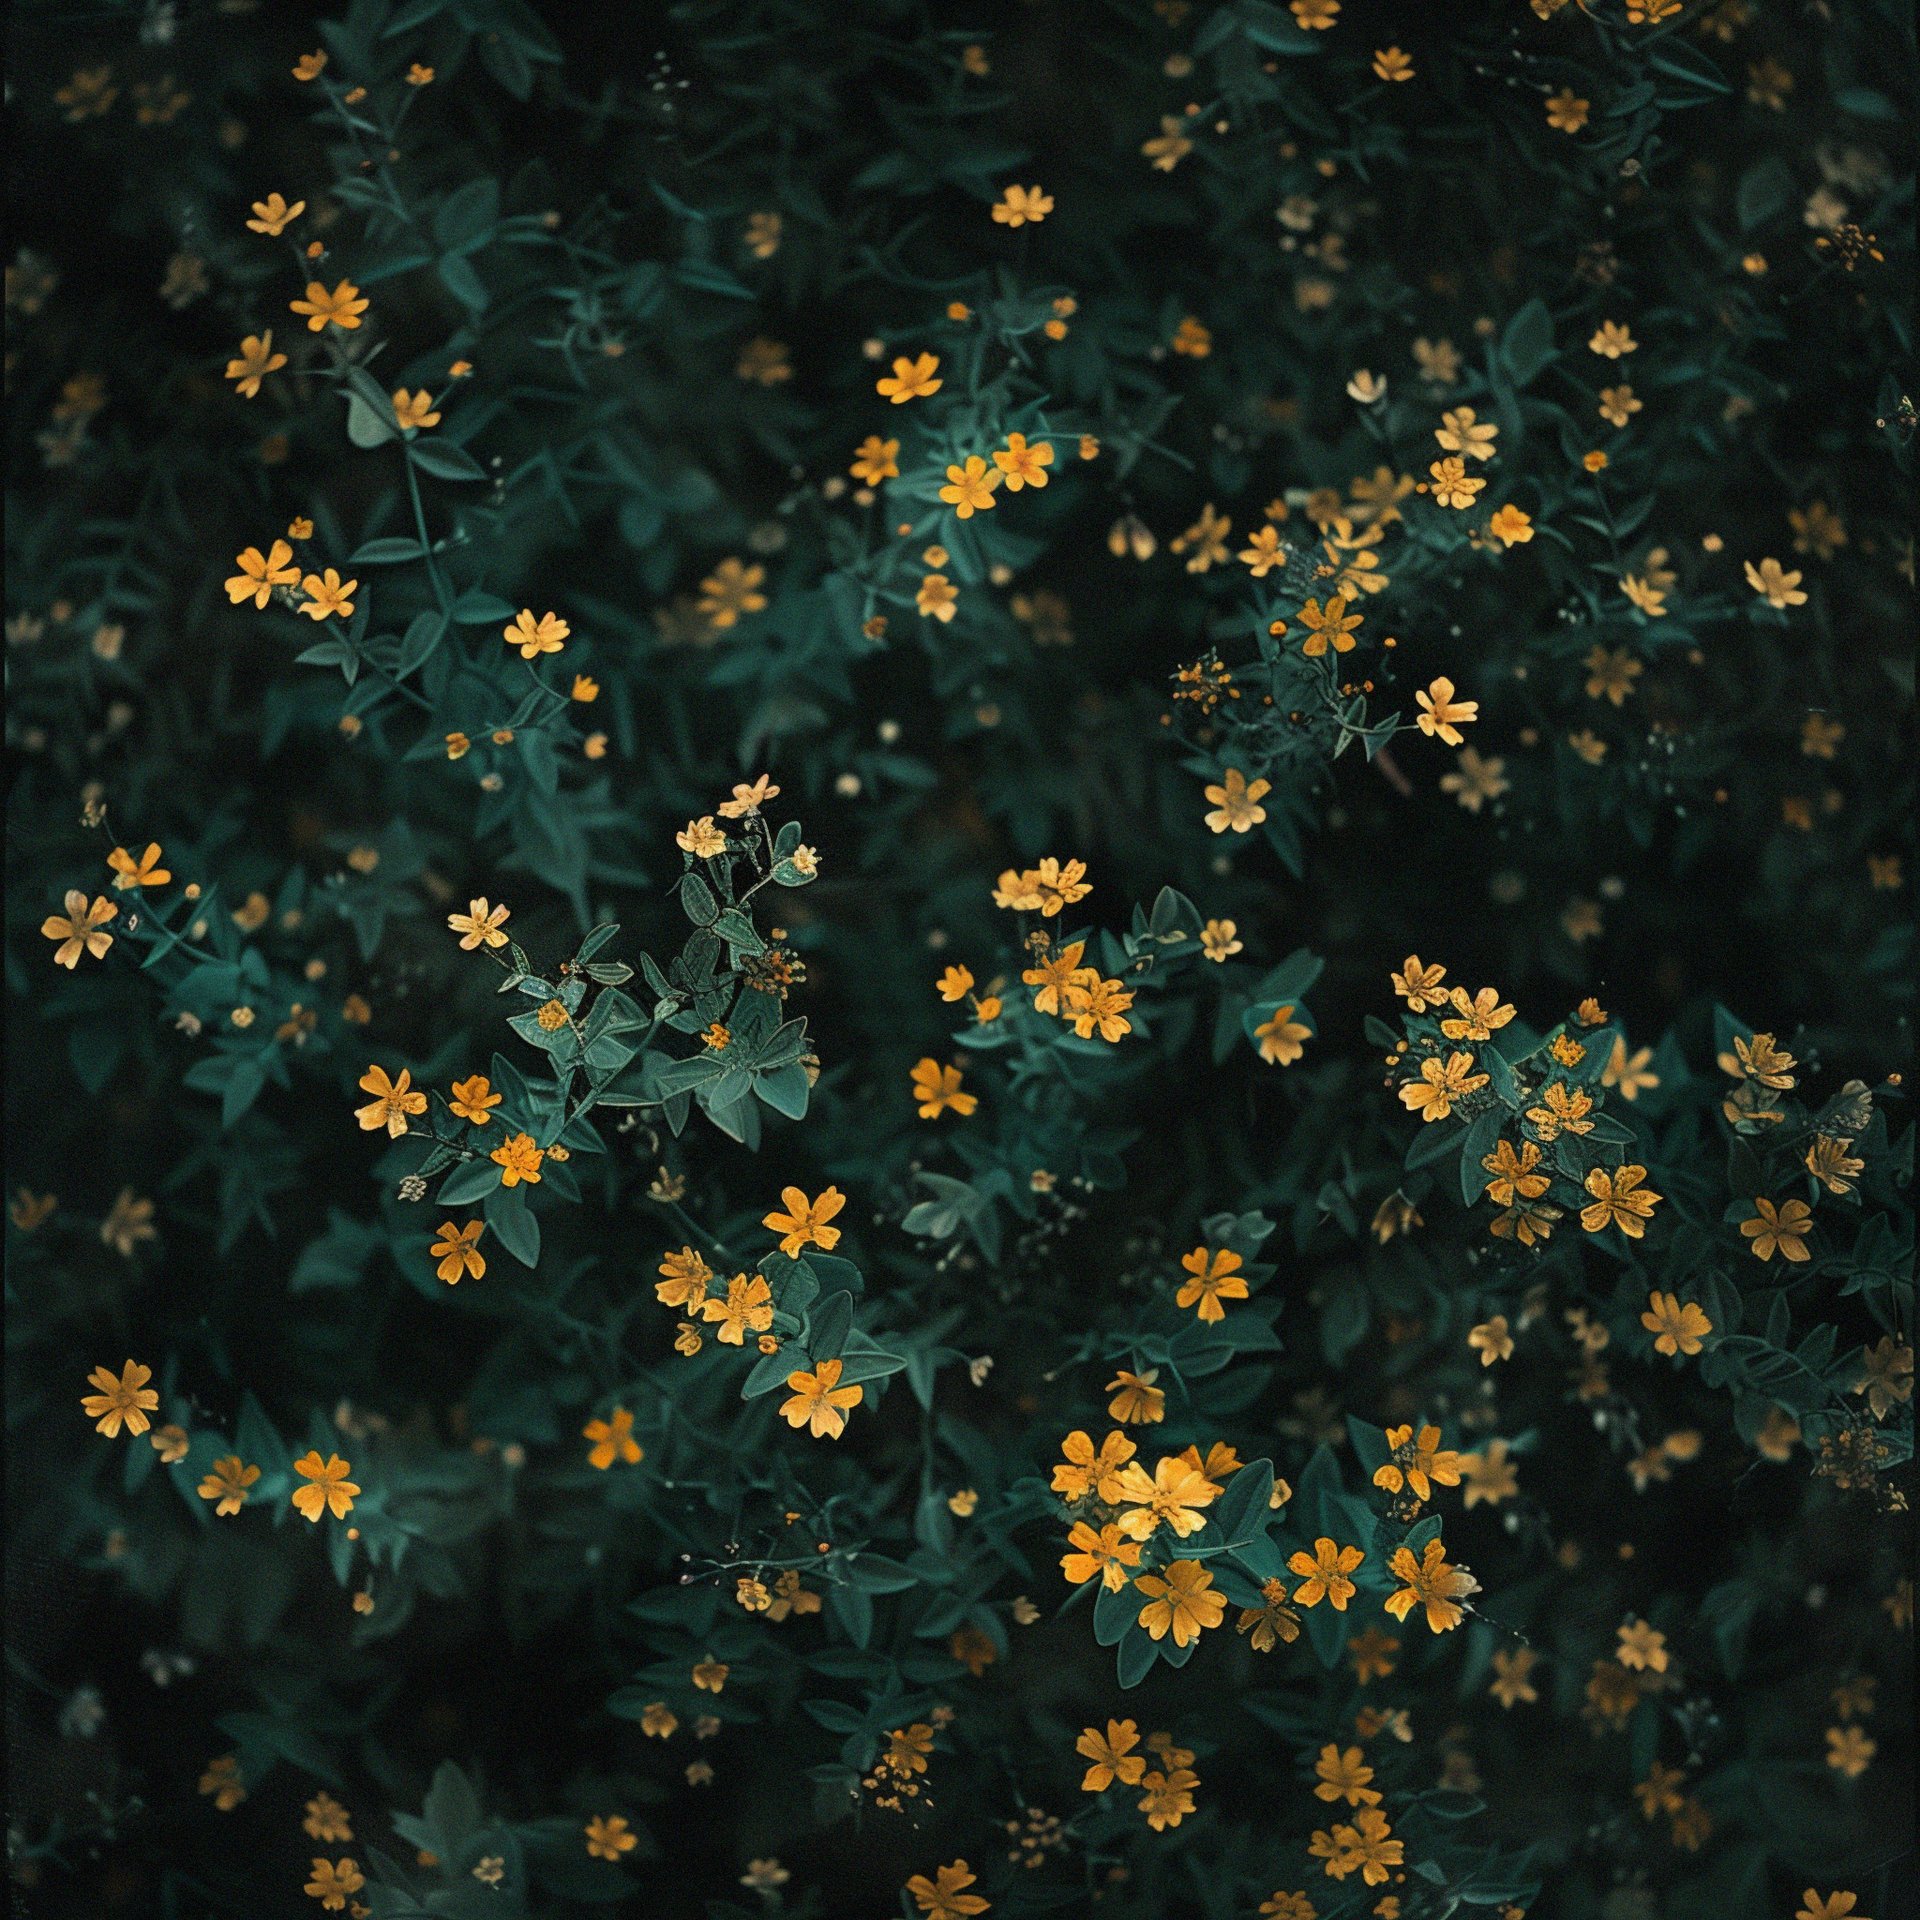 tiny yellow flowers